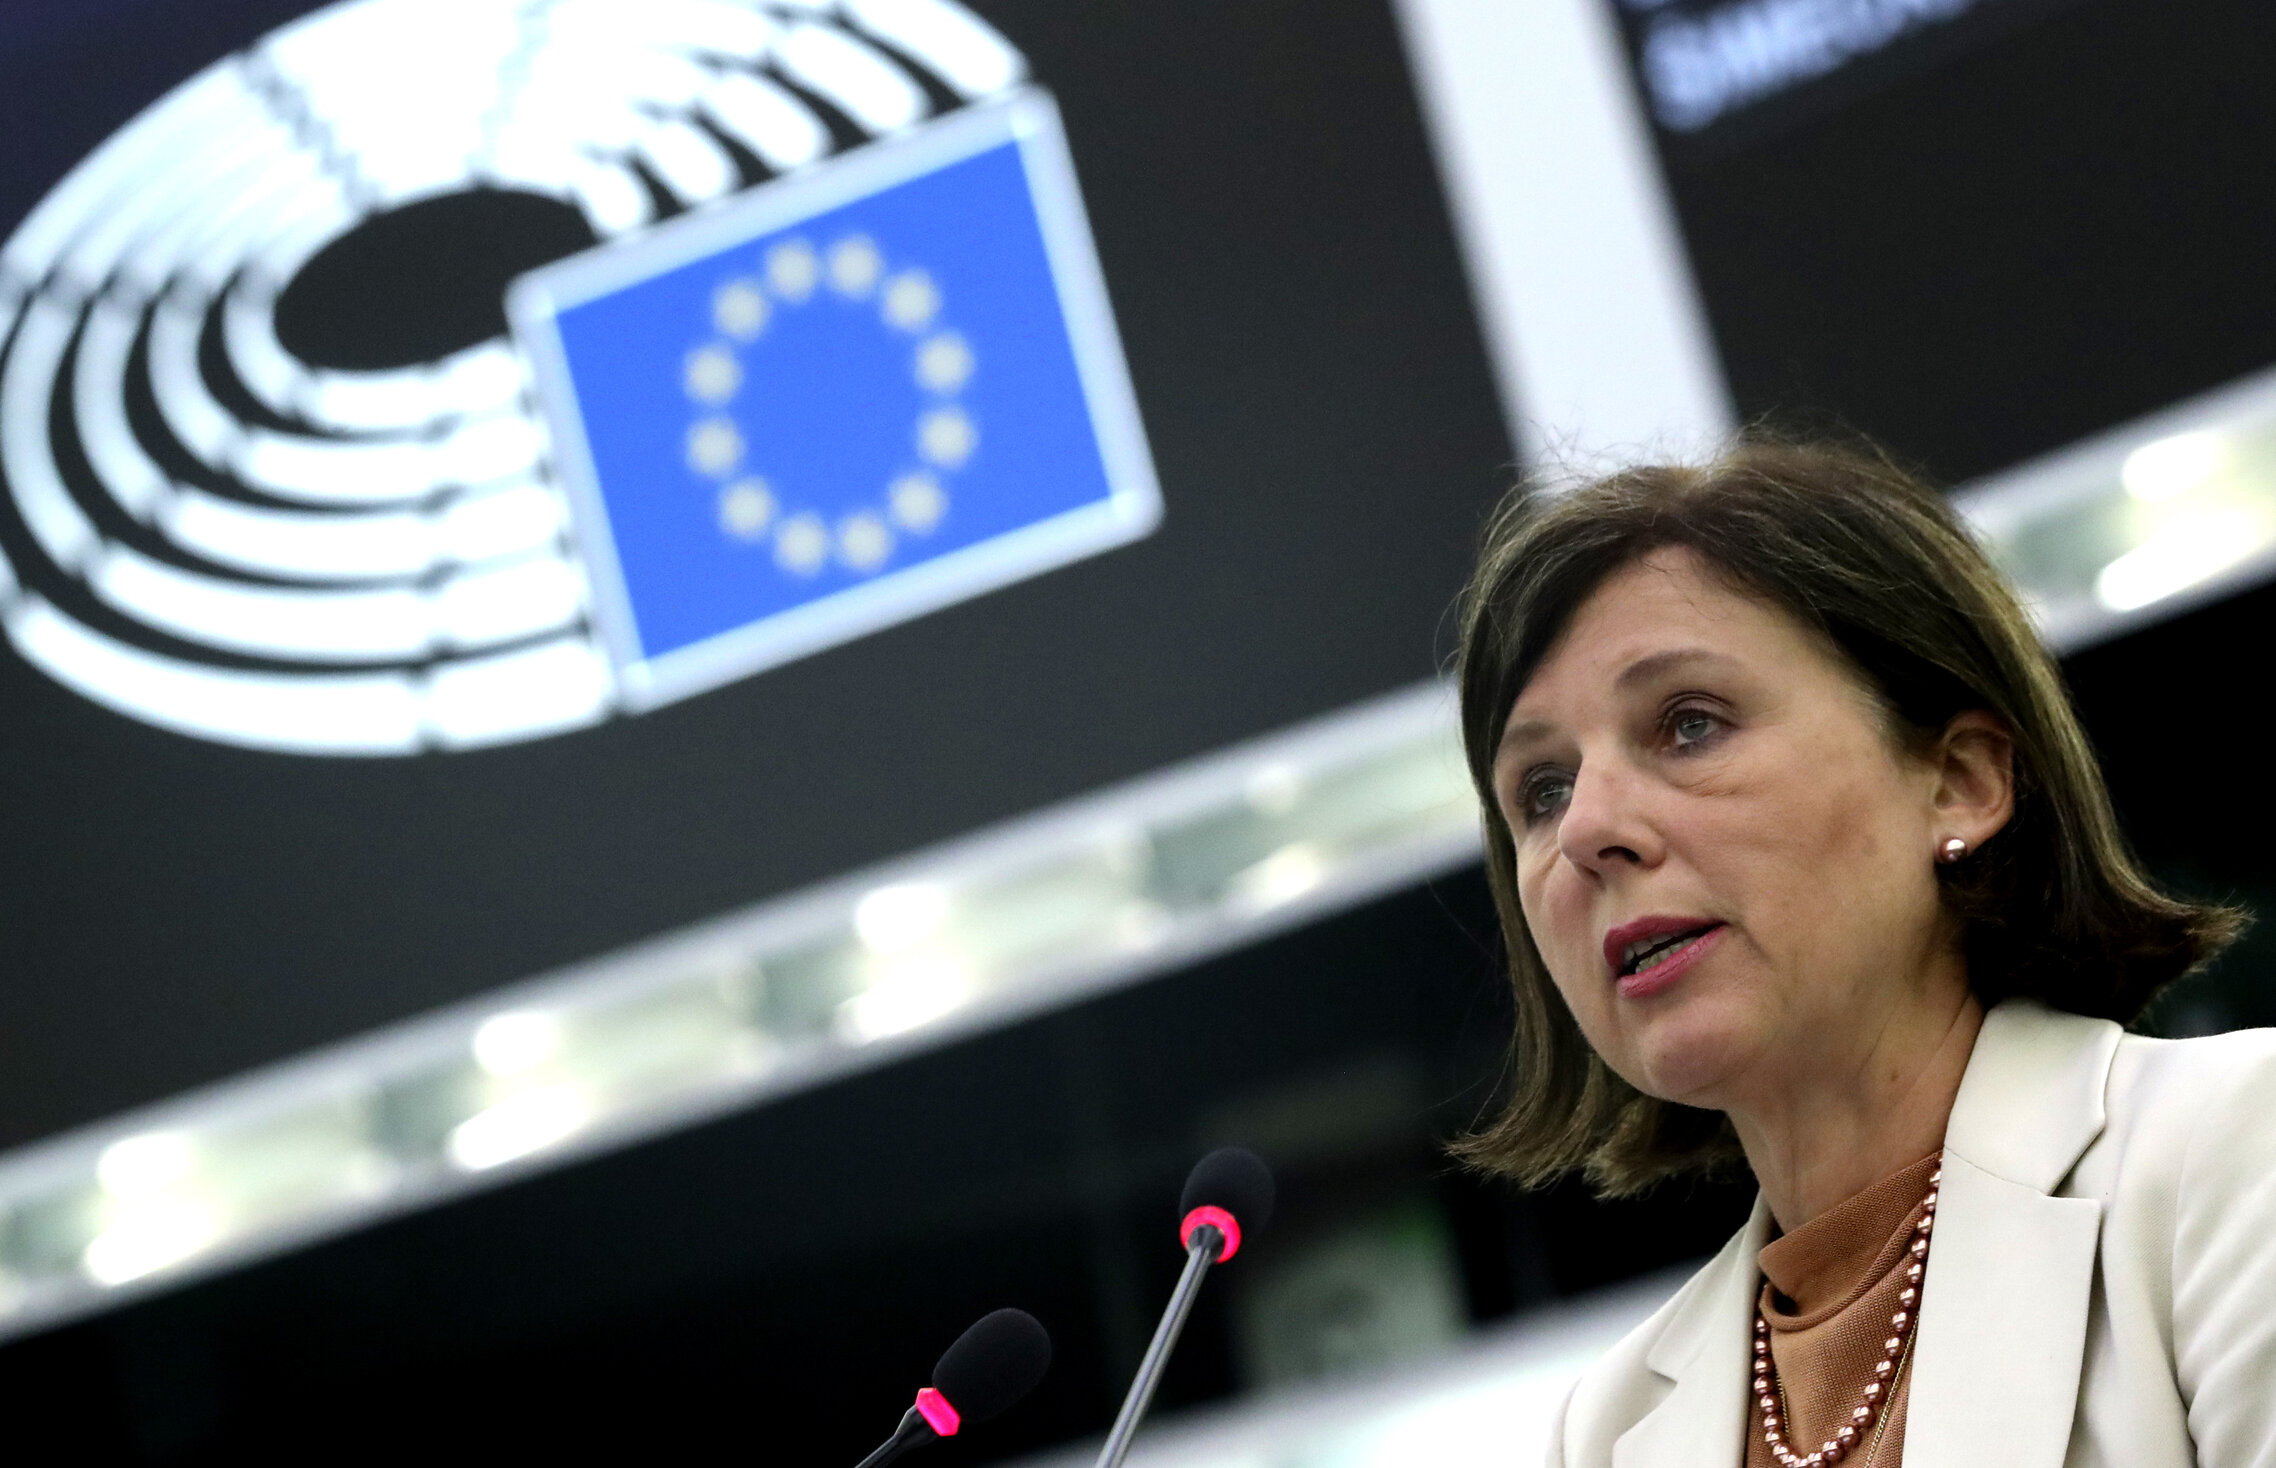 Věra Jourová, EU Commissioner